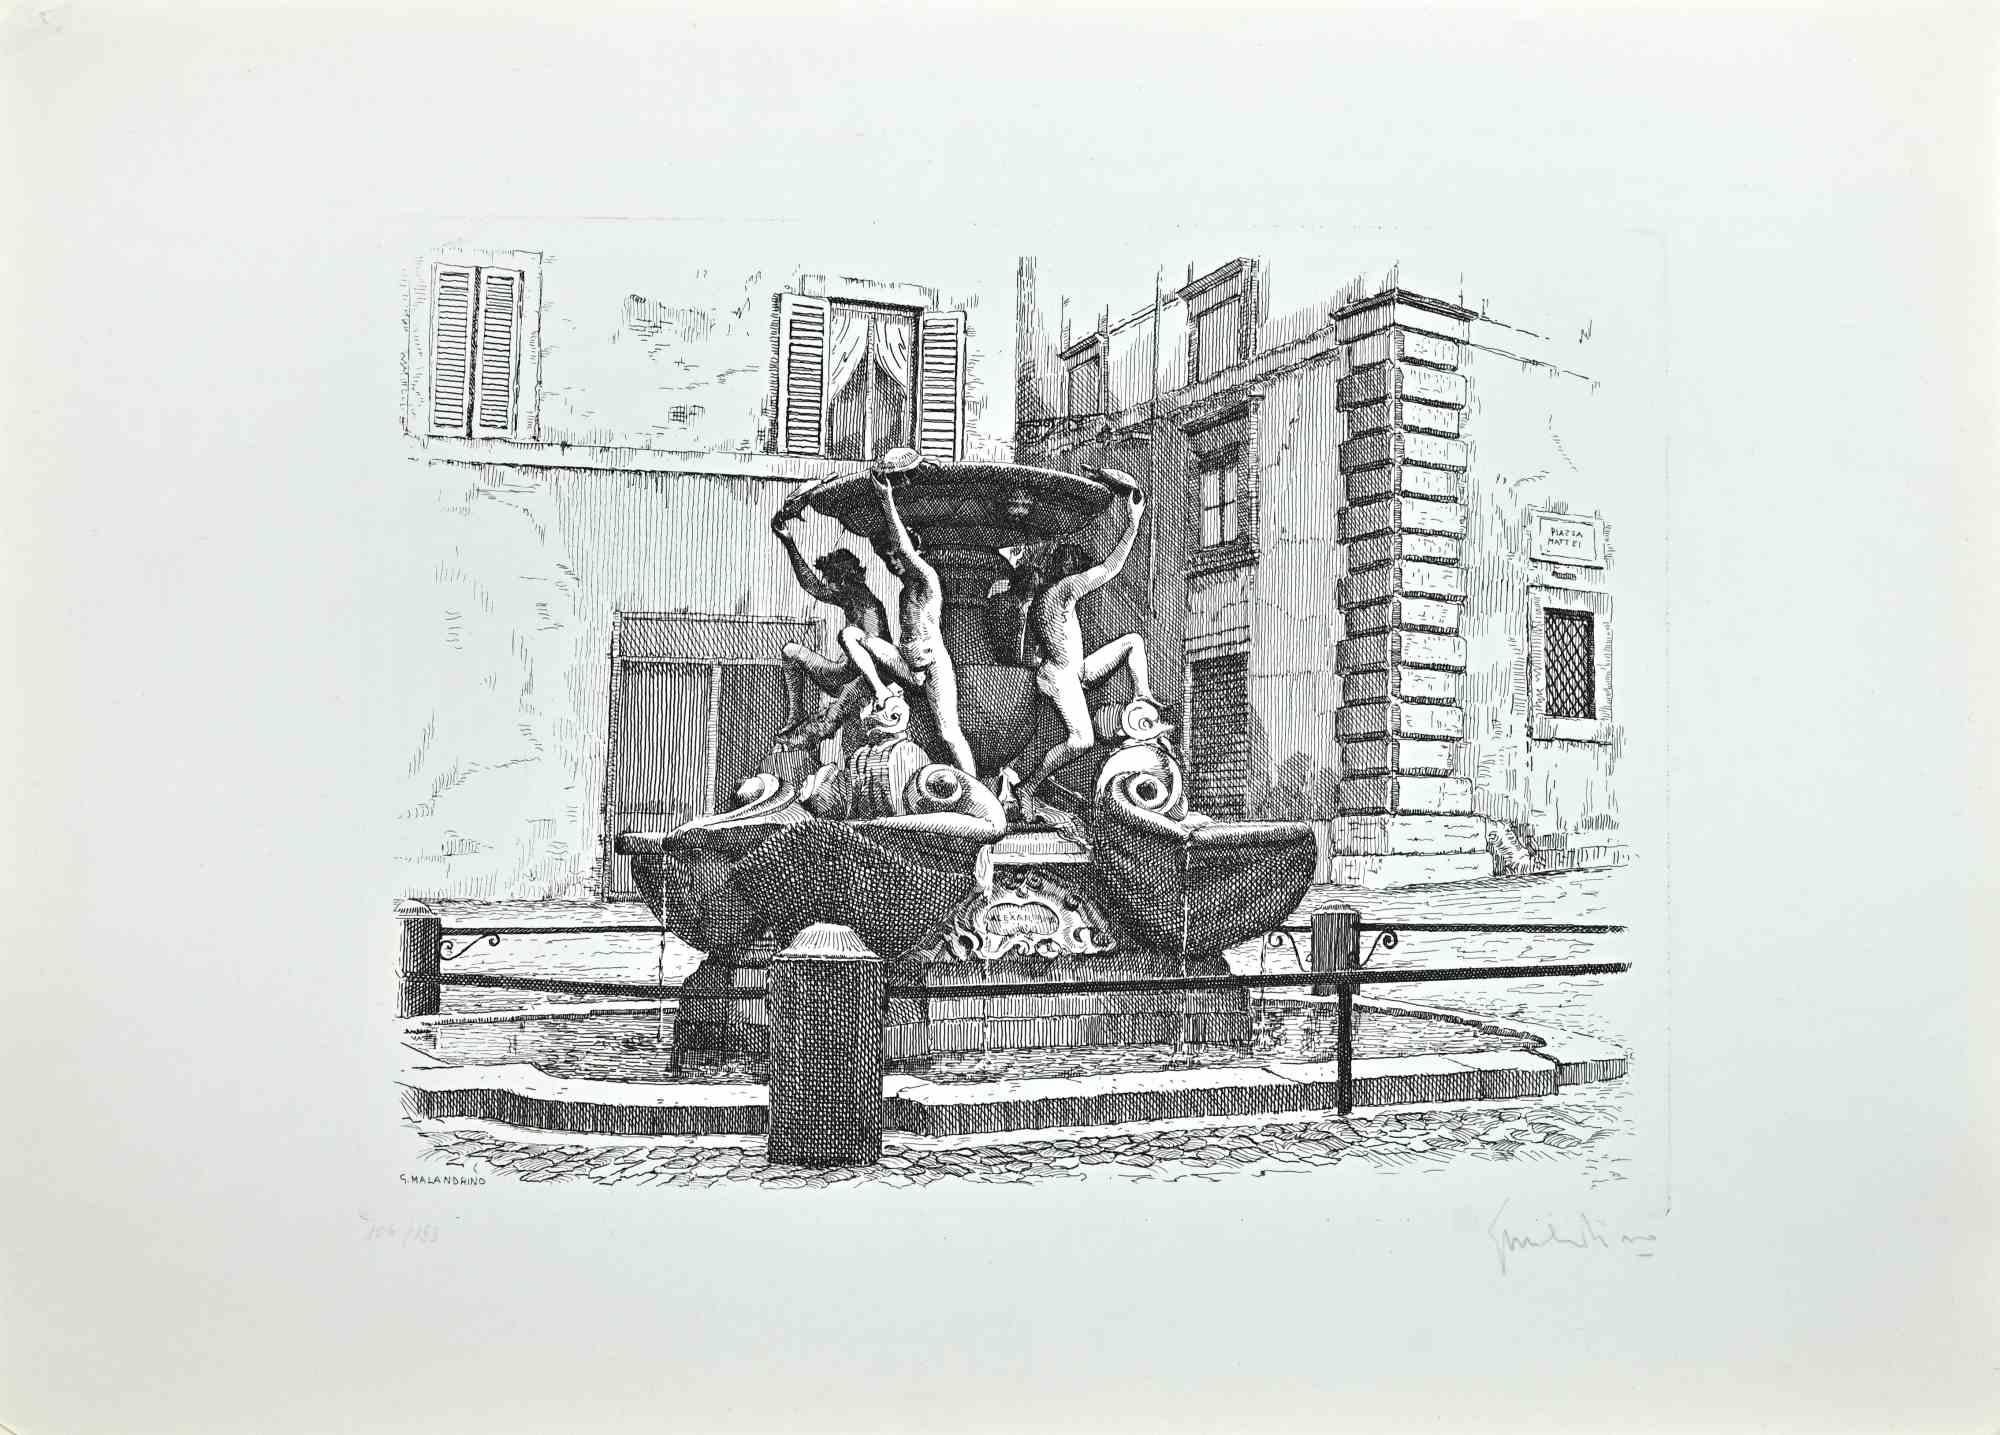 Fountain of the Turtles ist ein Kunstwerk von Giuseppe Malandrino.

Druck in Ätztechnik.

Vom Künstler in der rechten unteren Ecke mit Bleistift handsigniert.

Nummerierte Ausgabe104/199 .

Guter Zustand. 

Dieses Kunstwerk stellt den schönen